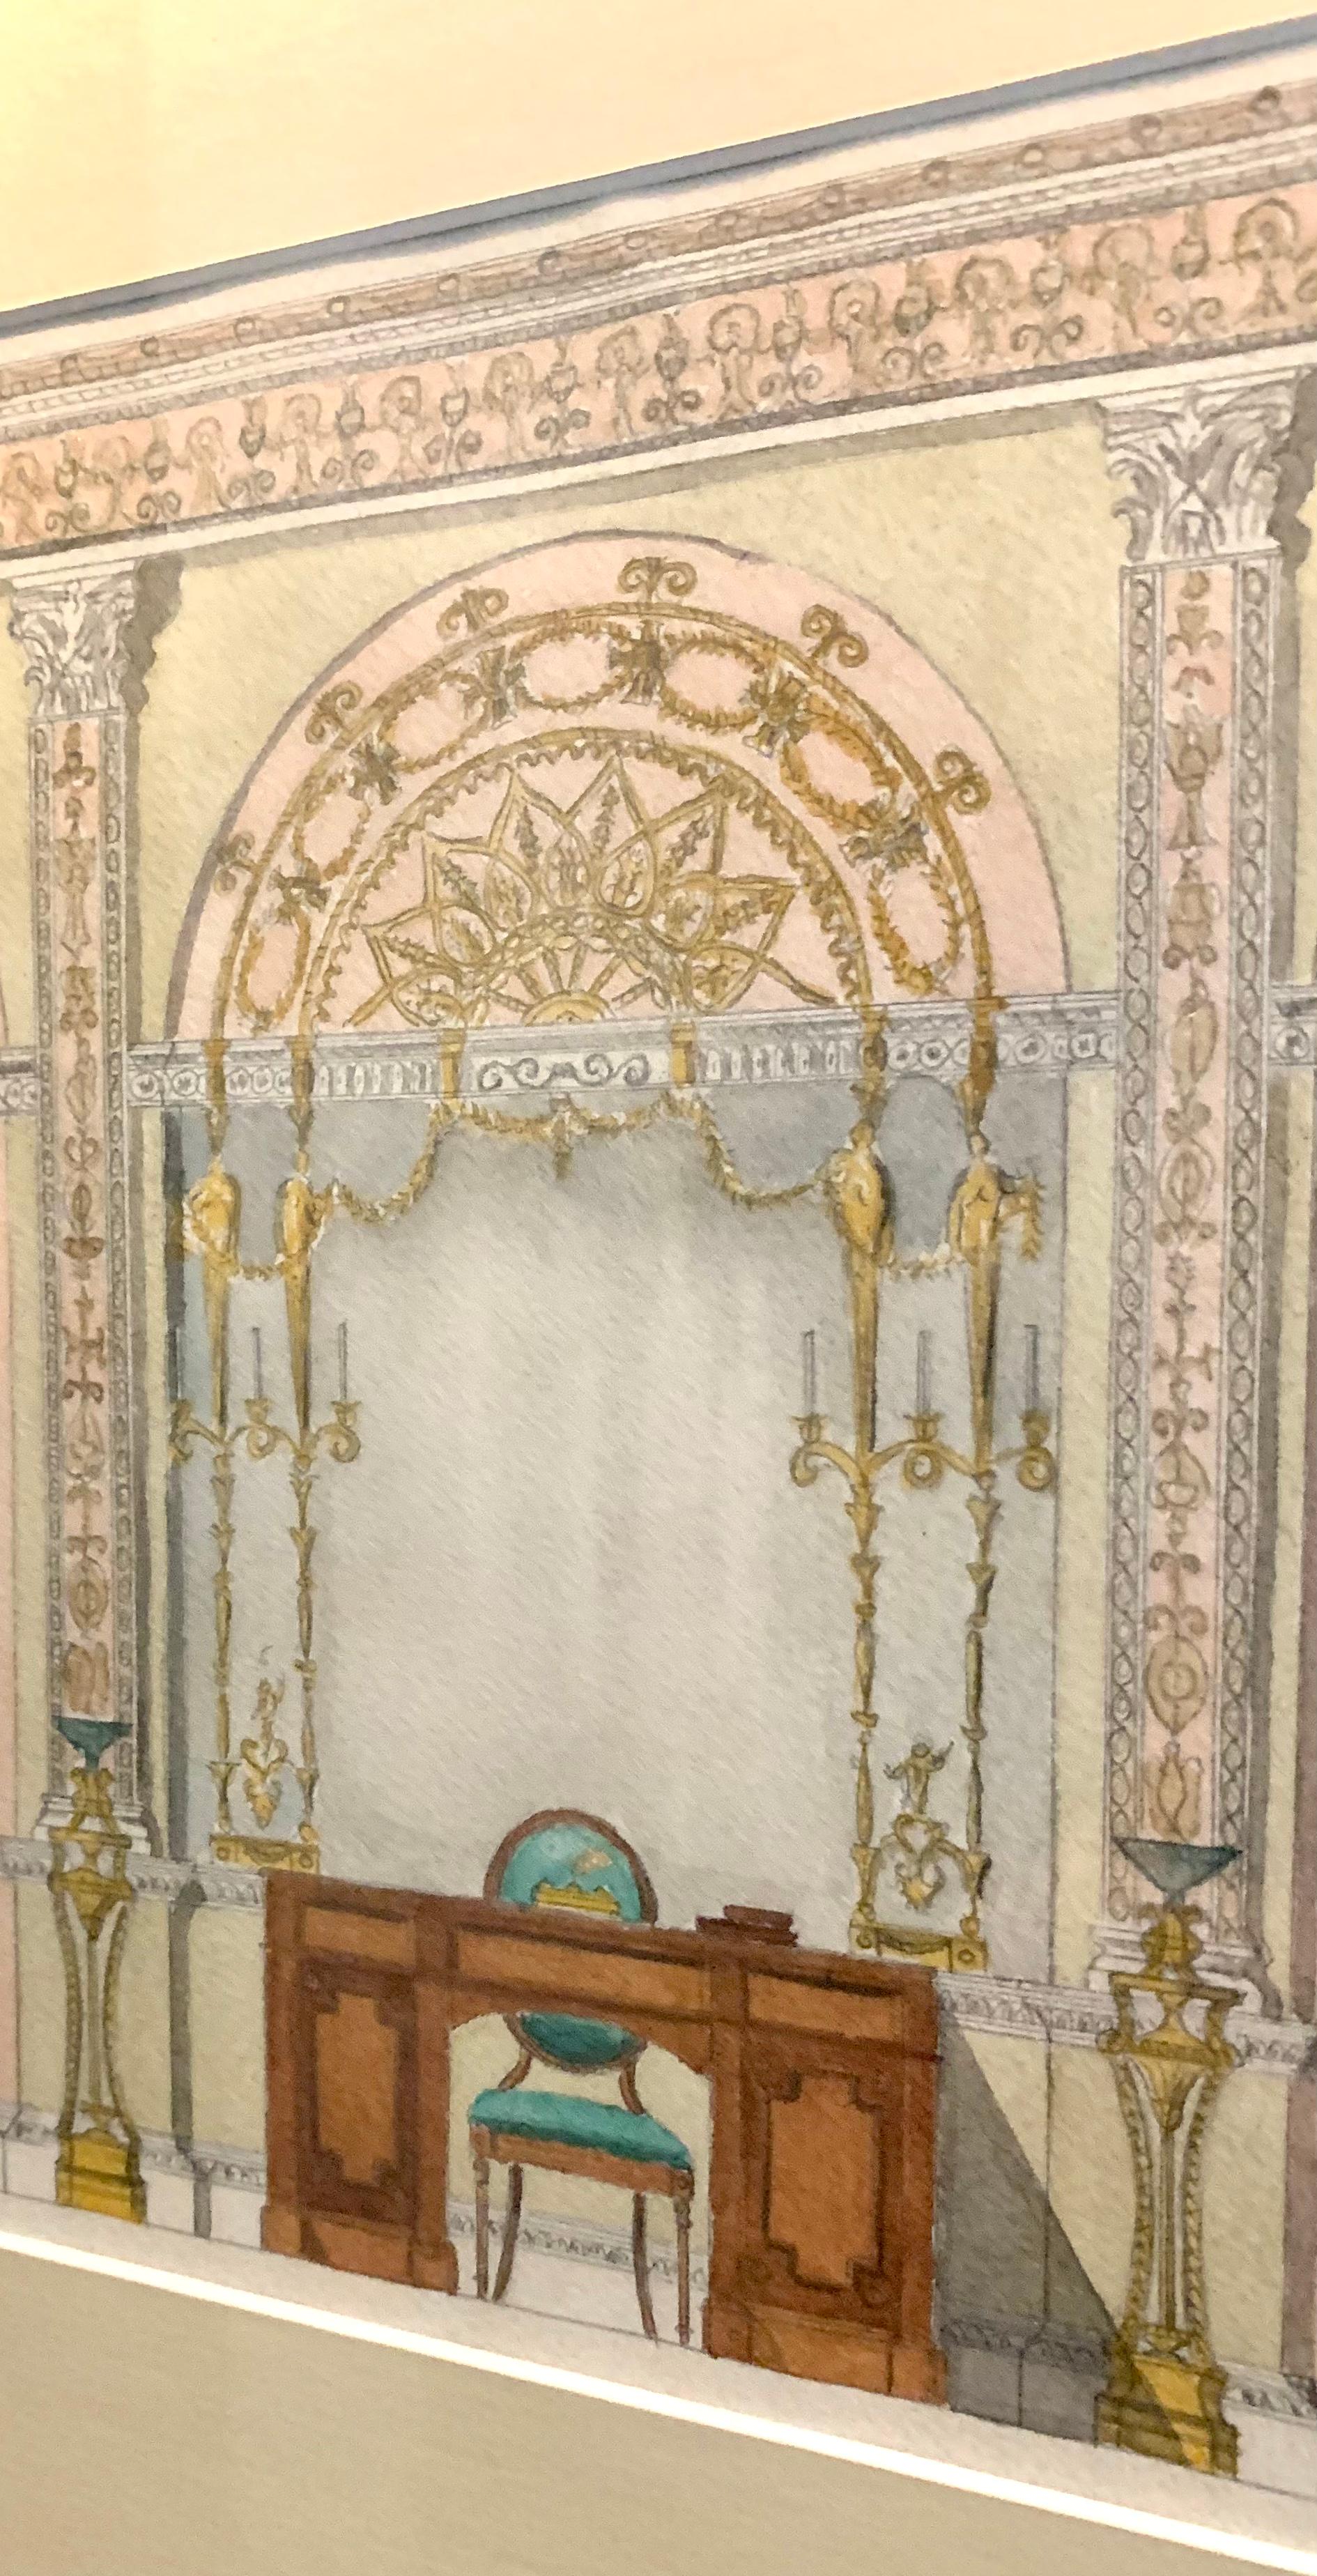 Schönes antikes englisches Aquarellgemälde eines Palastes im Adam-Stil. Die Darstellung eines großzügig proportionierten Raums mit einem prächtigen zentralen Spiegel im klassischen Adam-Stil, flankiert von einem Paar Pilastern und einem großen